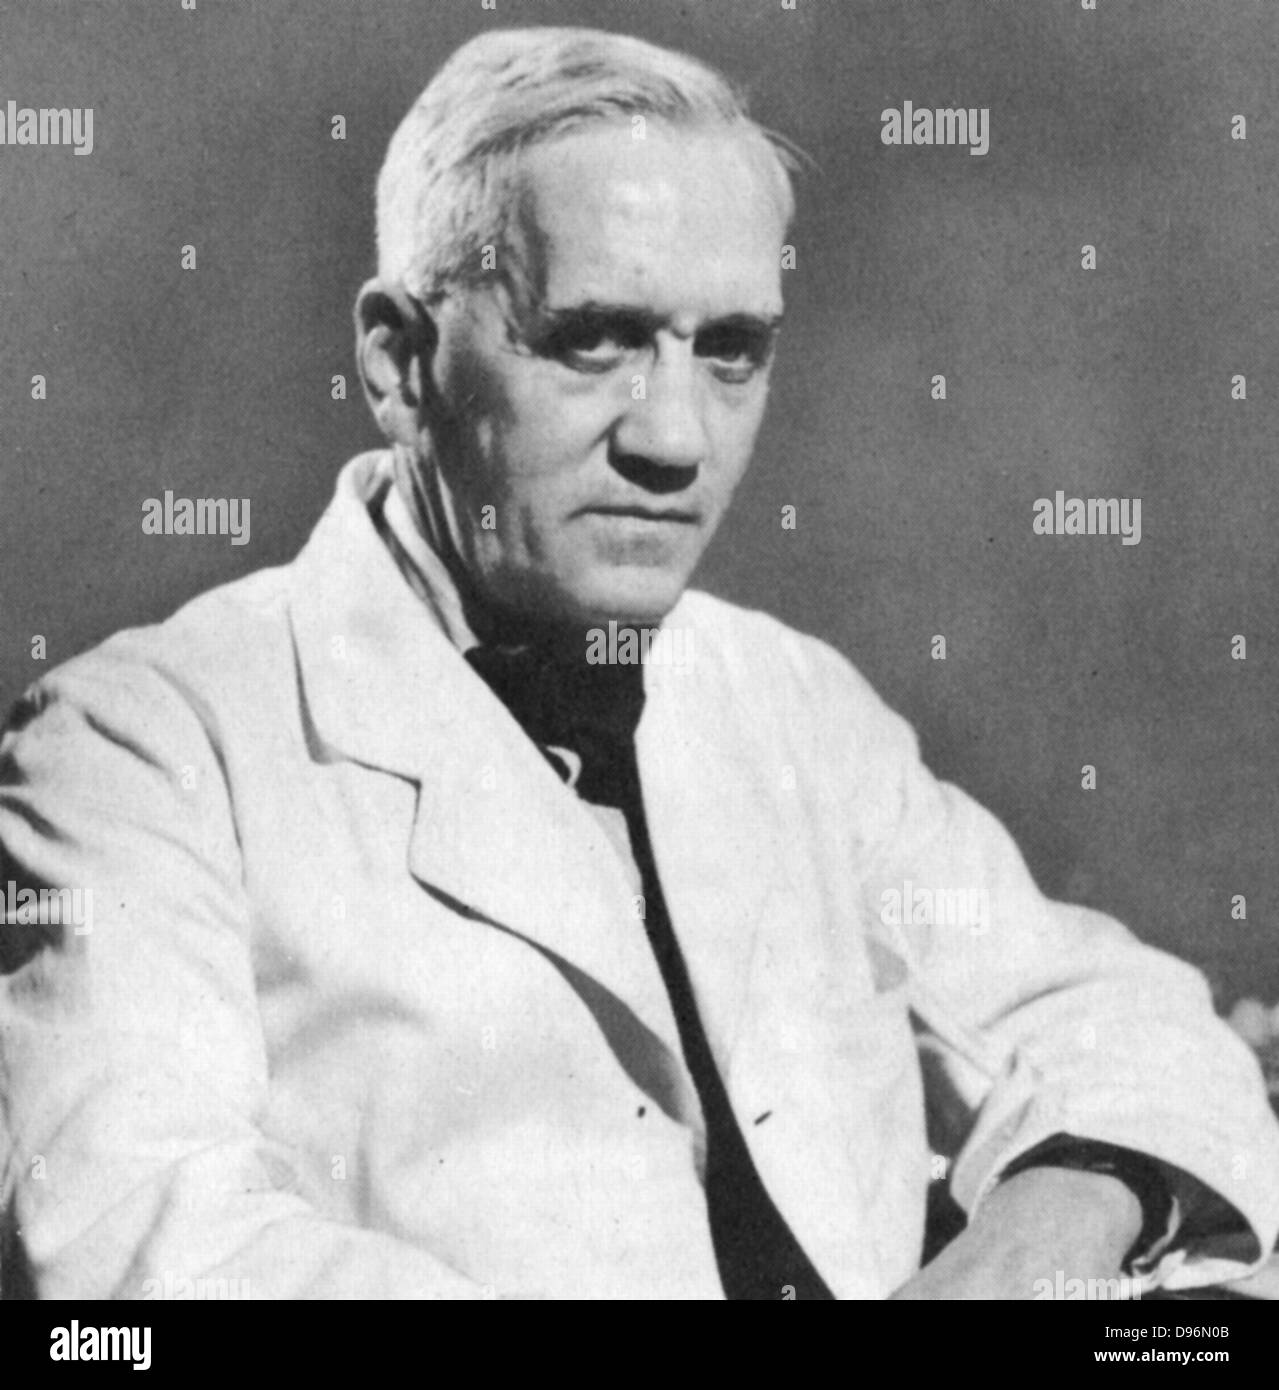 Alexander Fleming (1881-1955) schottische Bakteriologe und Chirurg. Penicillin entdeckt 1928. Geteilte Nobelpreis mit Florey und Chain (1945). Stockfoto